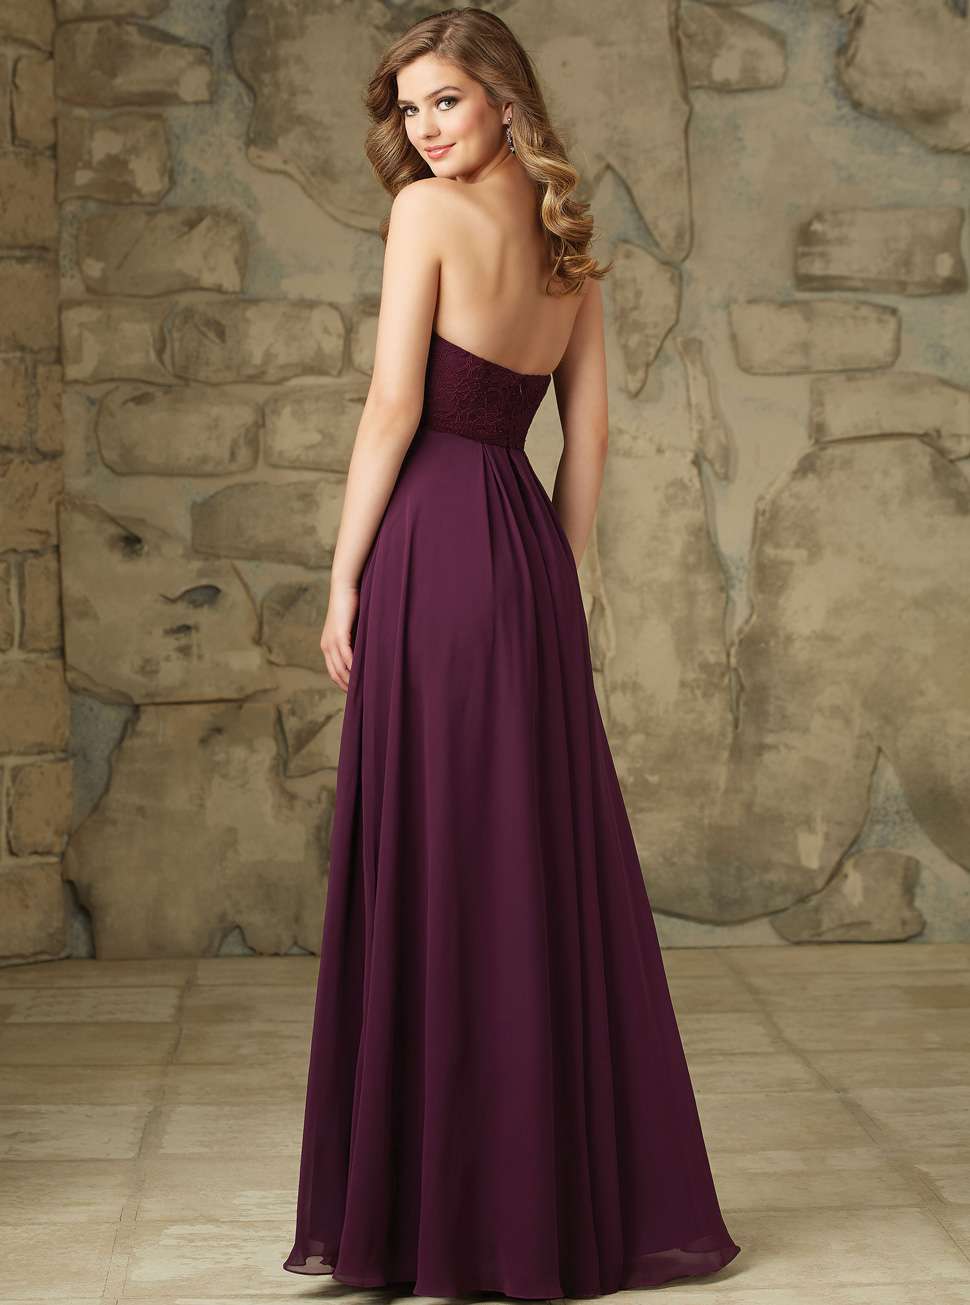 长款礼服定制批发欧式紫色雪纺纱婚礼新娘敬酒女装长裙LIFU6056